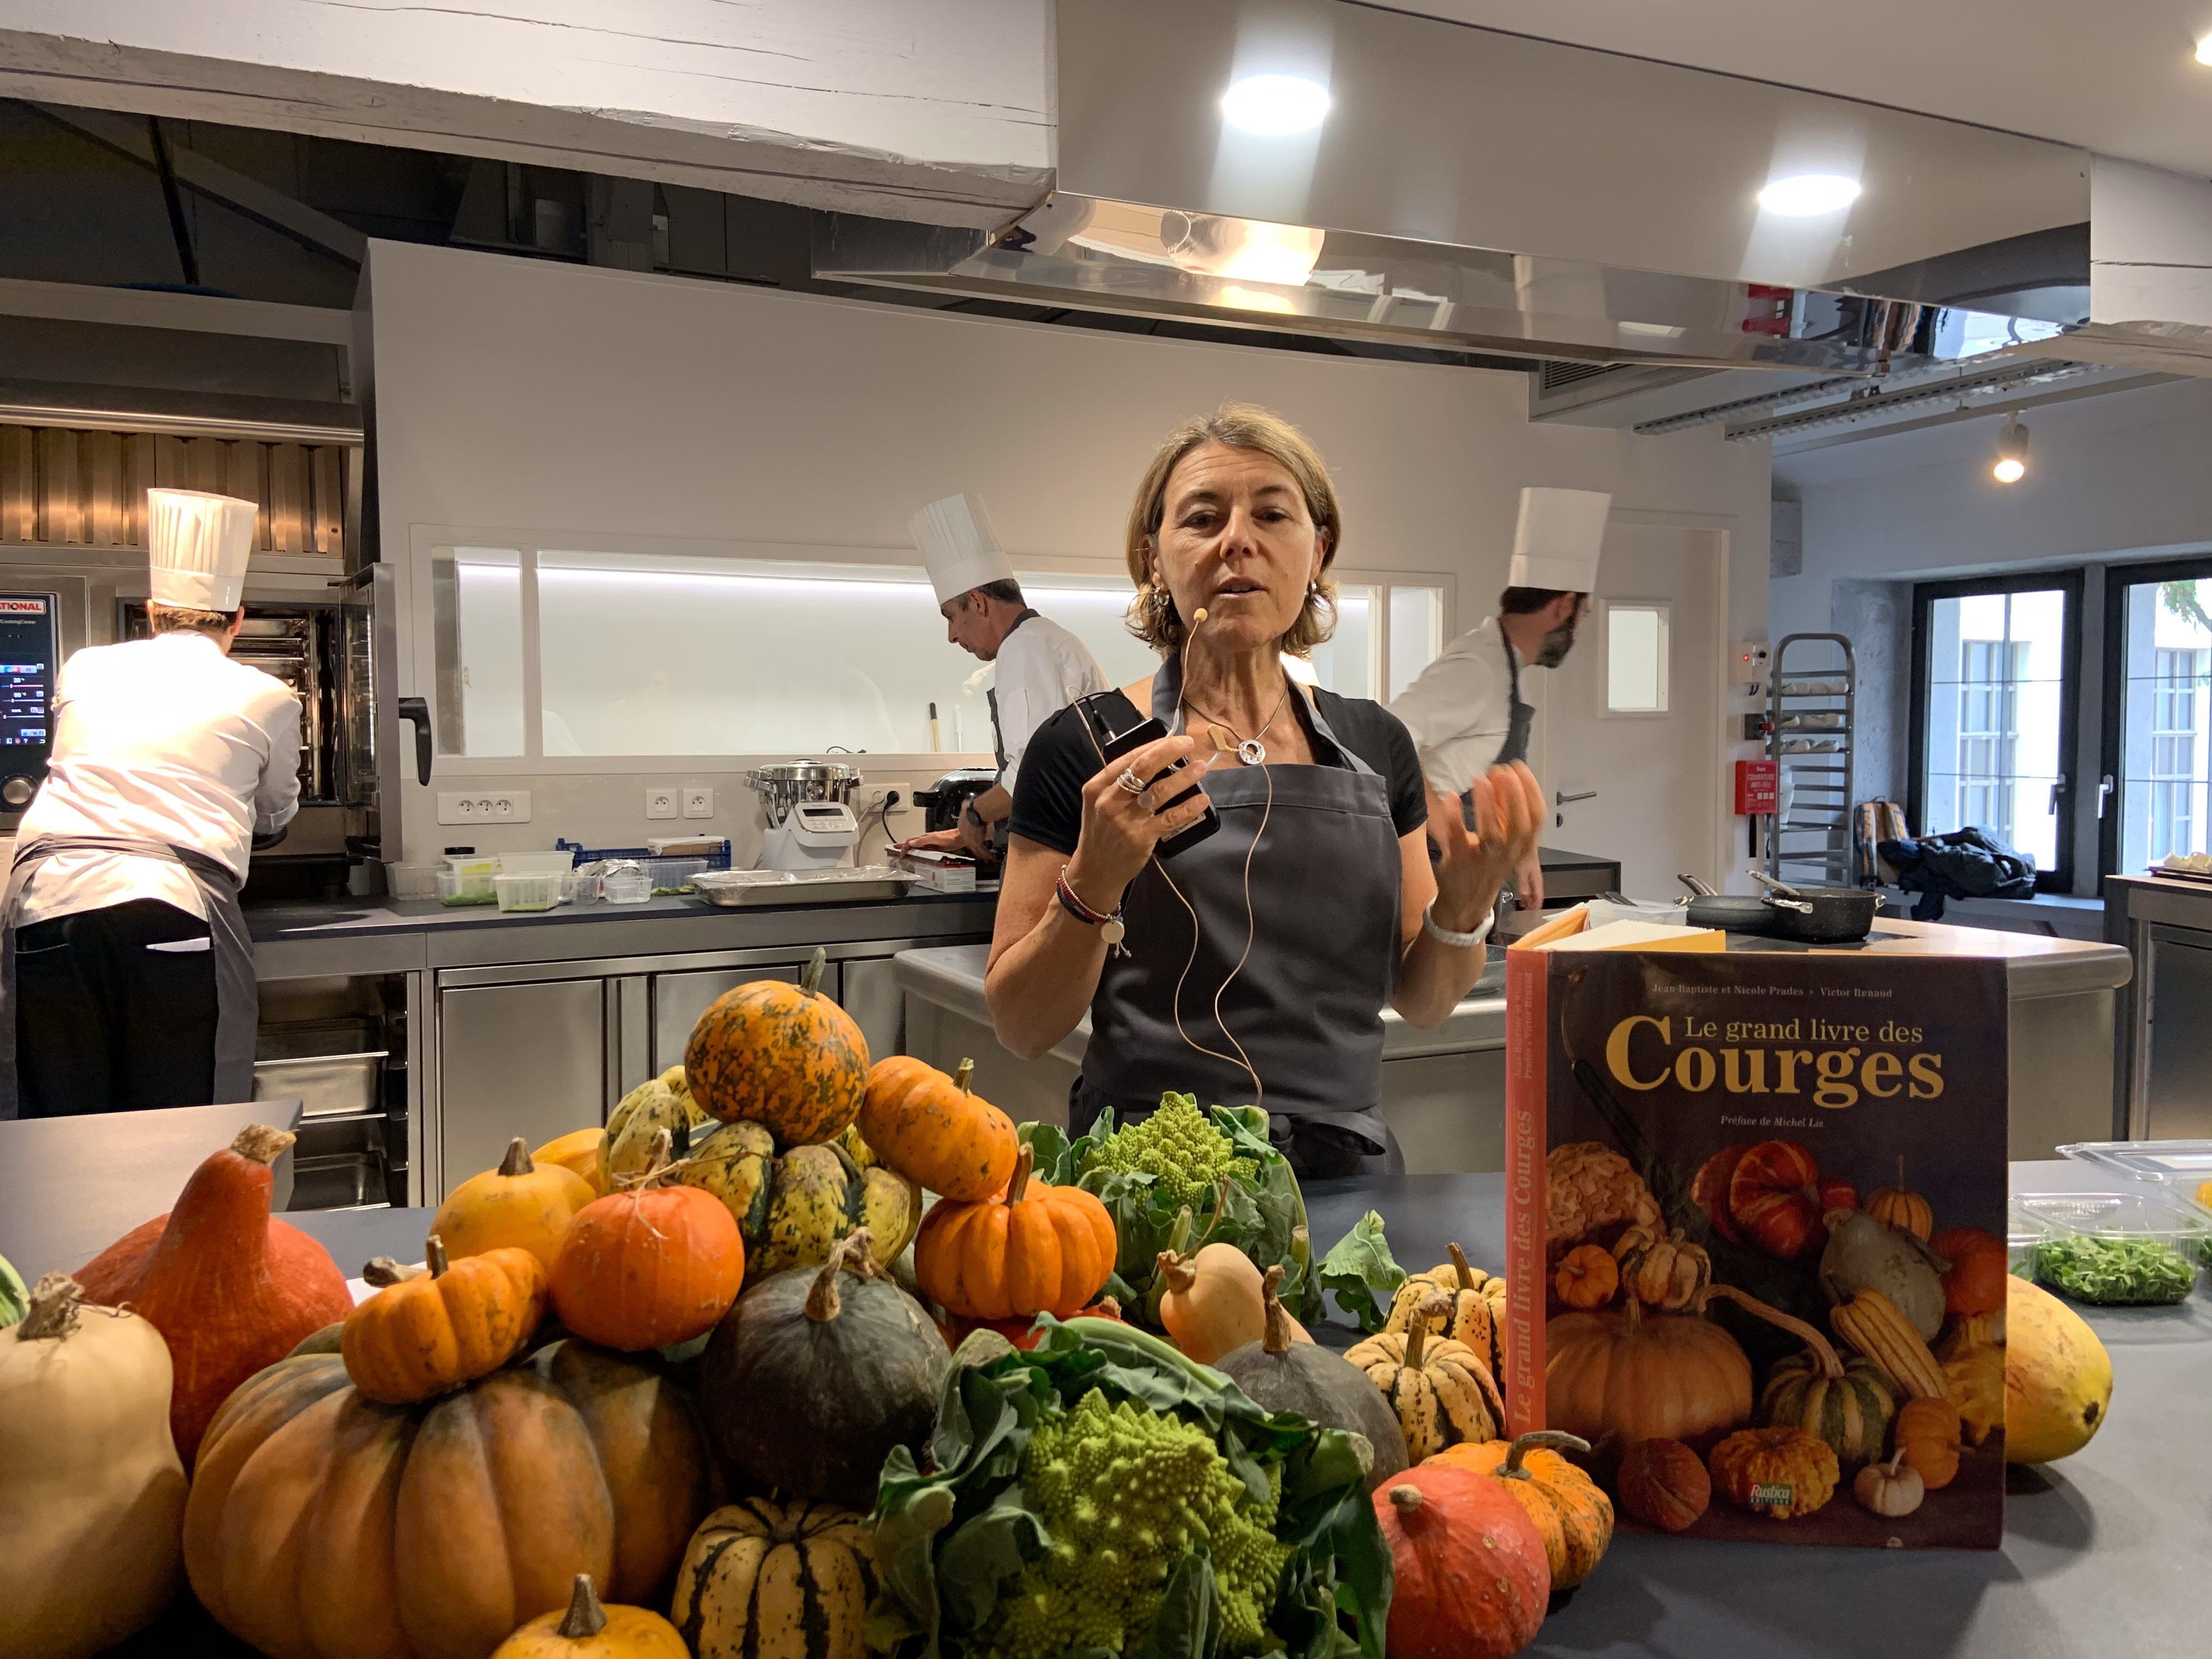 La nutritionniste Emmanuelle Rollet intervient dans le cadre de formation et conférence à la Cité de la Gastronomie Lyon. Crédit photo : LP/Catherine Lagrange